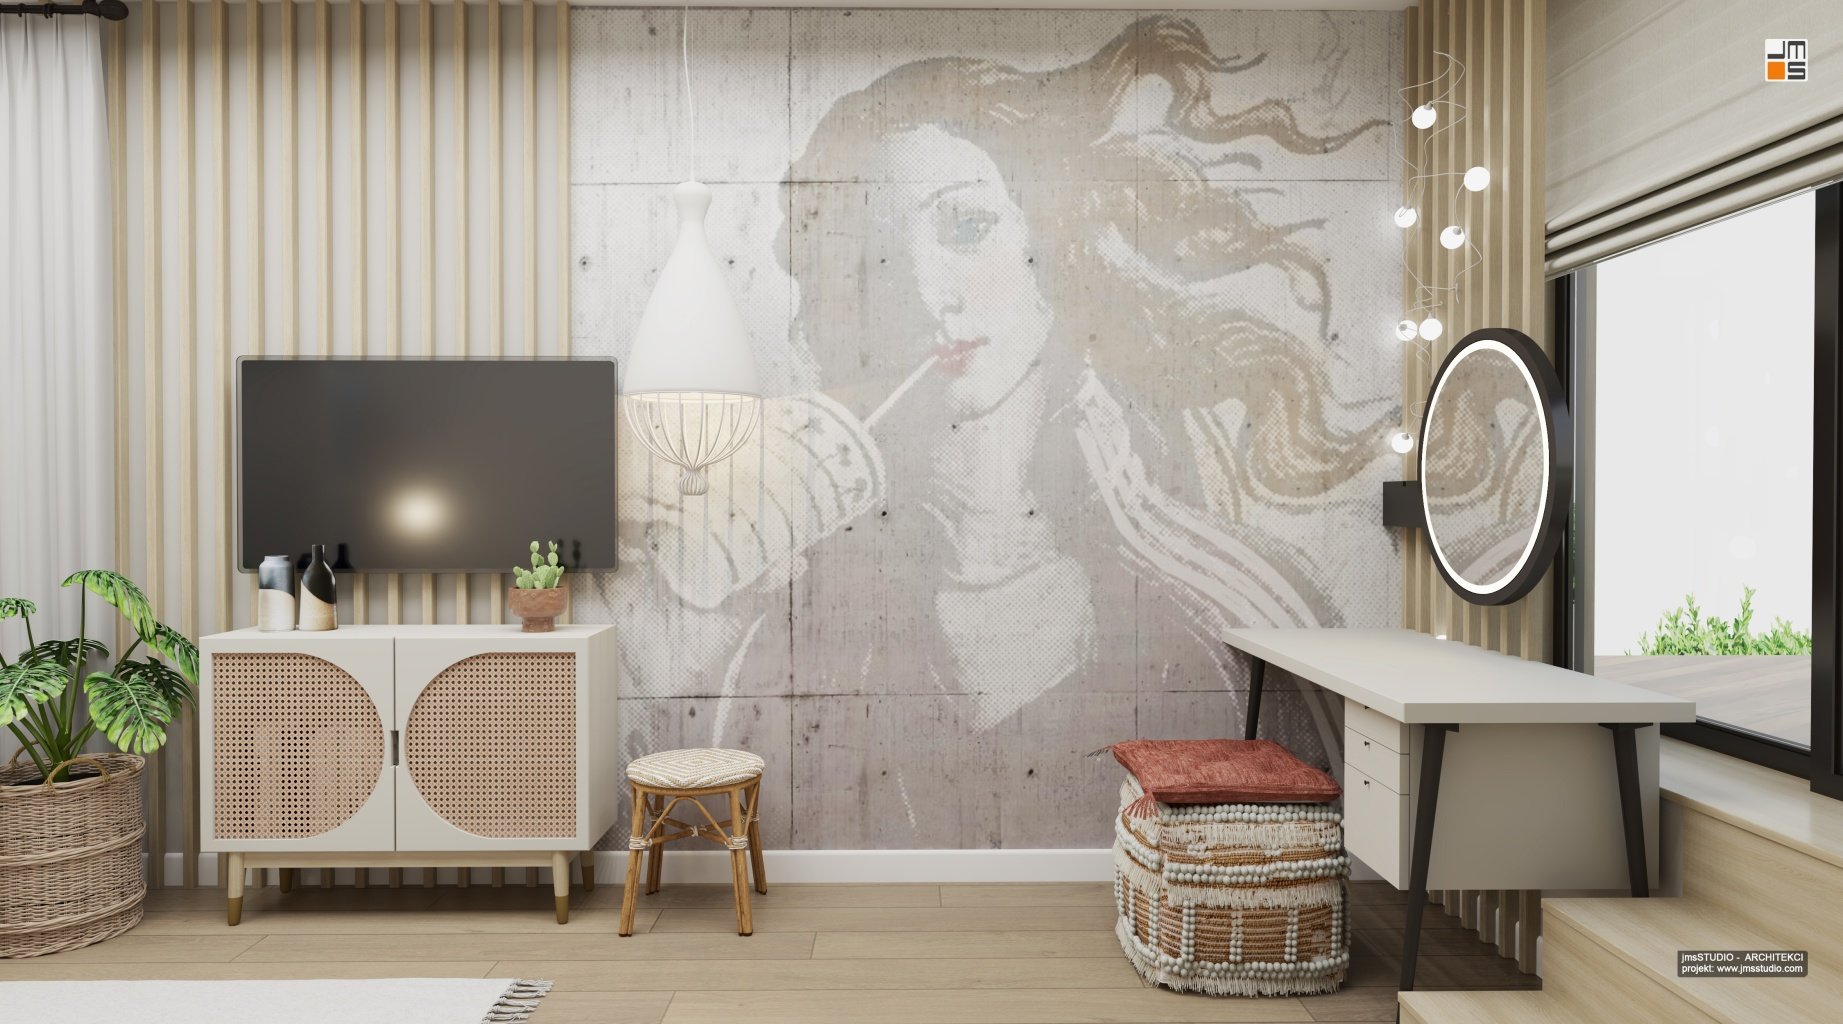 Piękna tapeta z nadrukiem grafiki kobiety w kolorach szarości o wyglądzie betonu architektonicznego to w połączeniu z lamelami z jasnego drewna piękny pomysł na projekt ściany w pokoju gościnnym